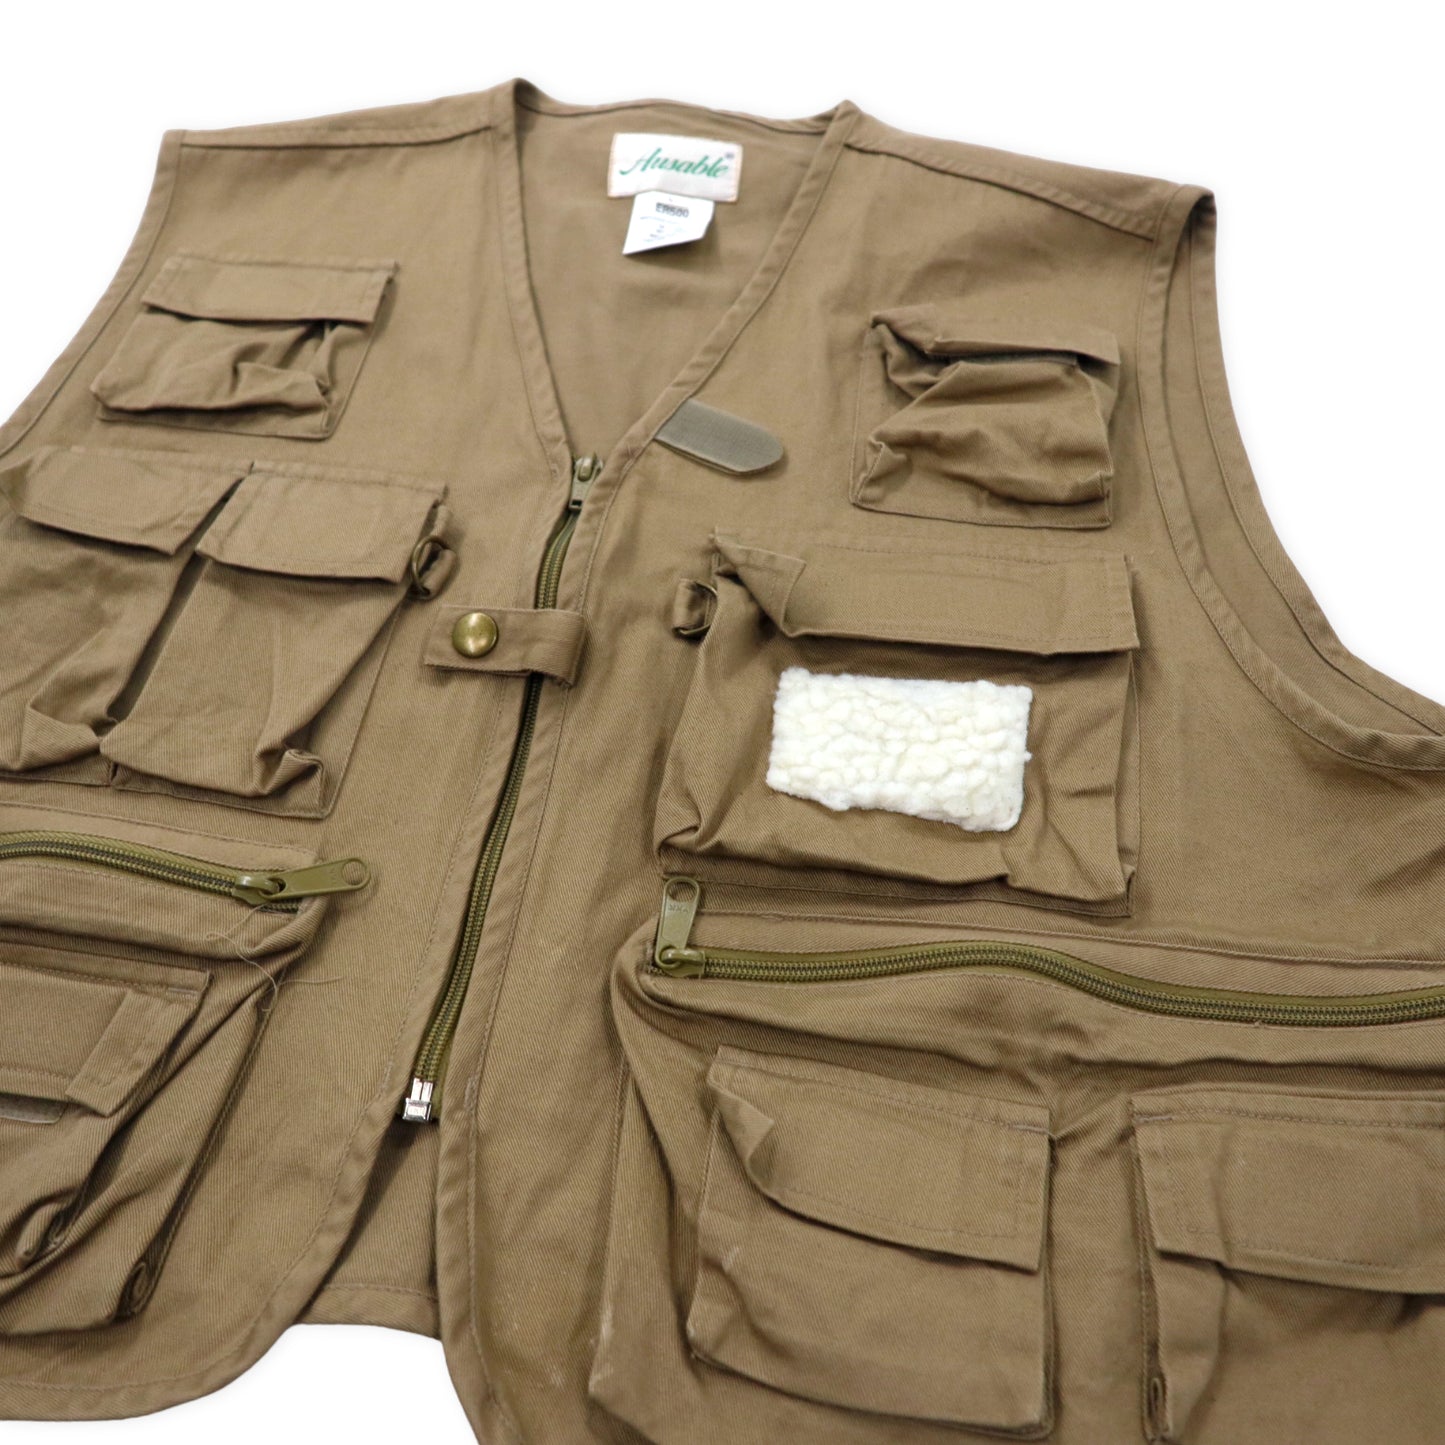 AUSABLE Fishing Vest L Beige Cotton Multi Pocket Fly Patch